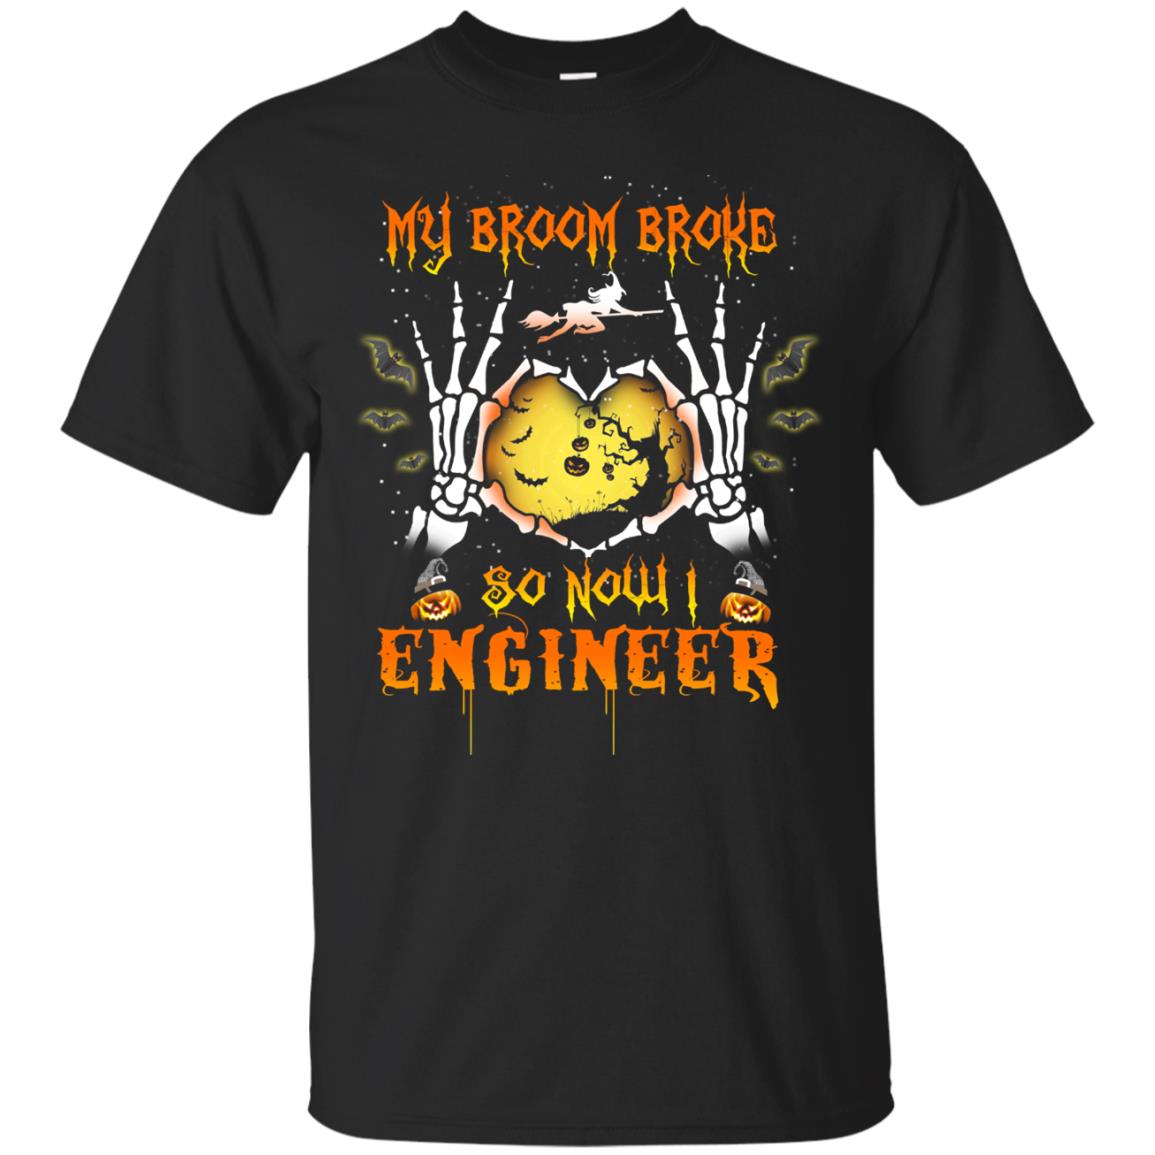 My broom broke so now I Engineer shirt, hoodie, tank